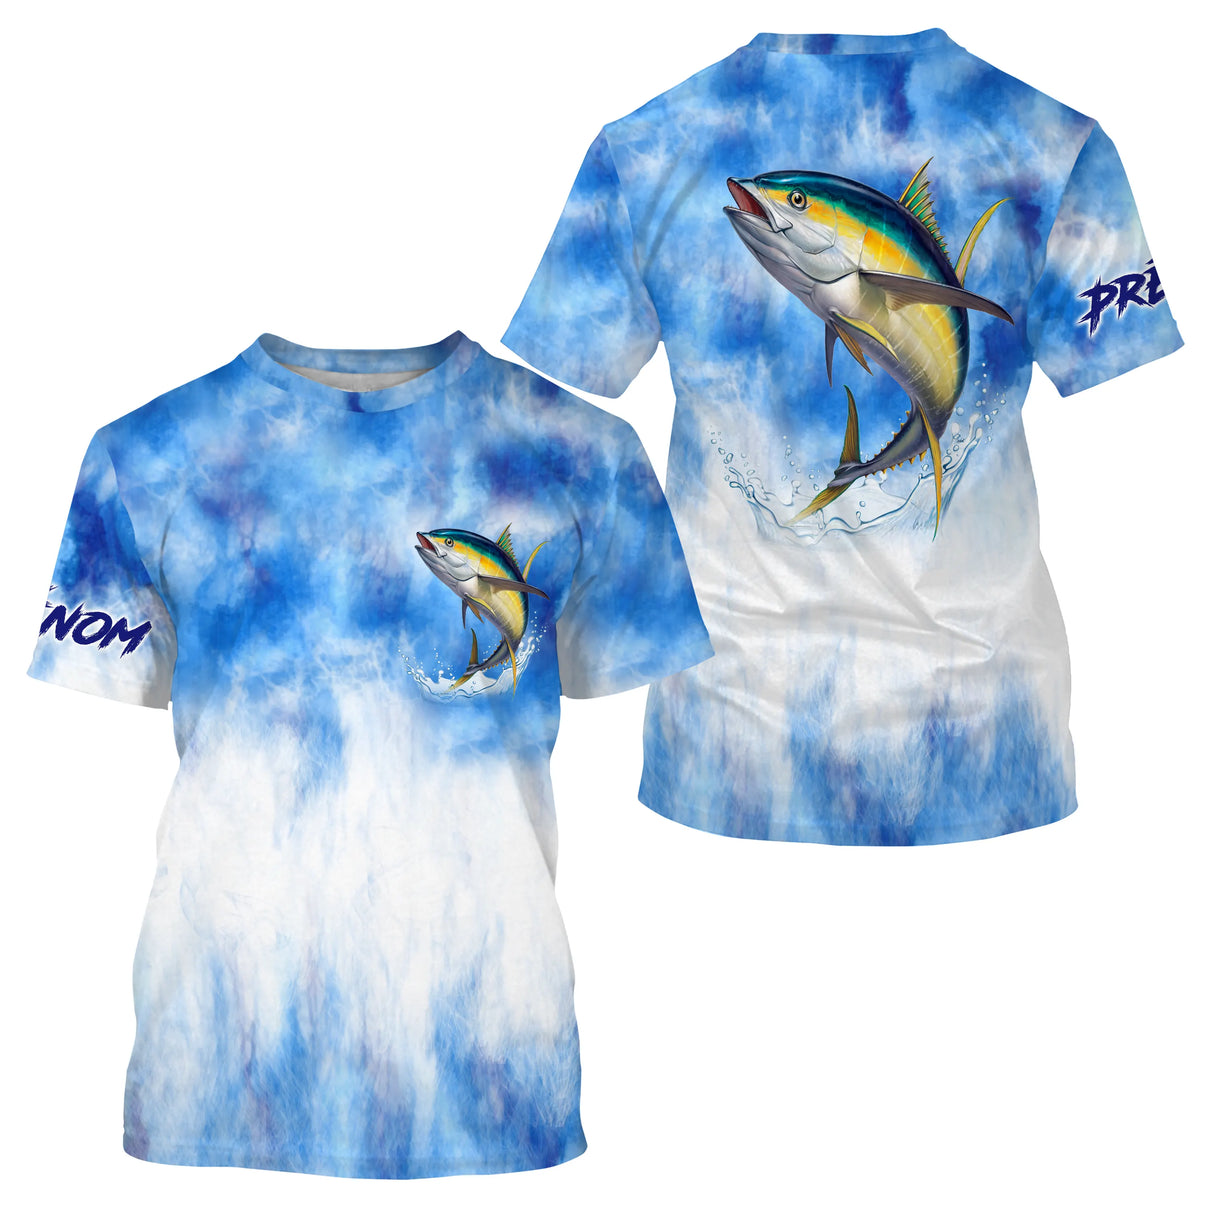 T-shirt Pêche Au Thon, Cadeau Original Pêcheur, Vêtement Personnalisé Pour La Pêche En Mer - CT21122229